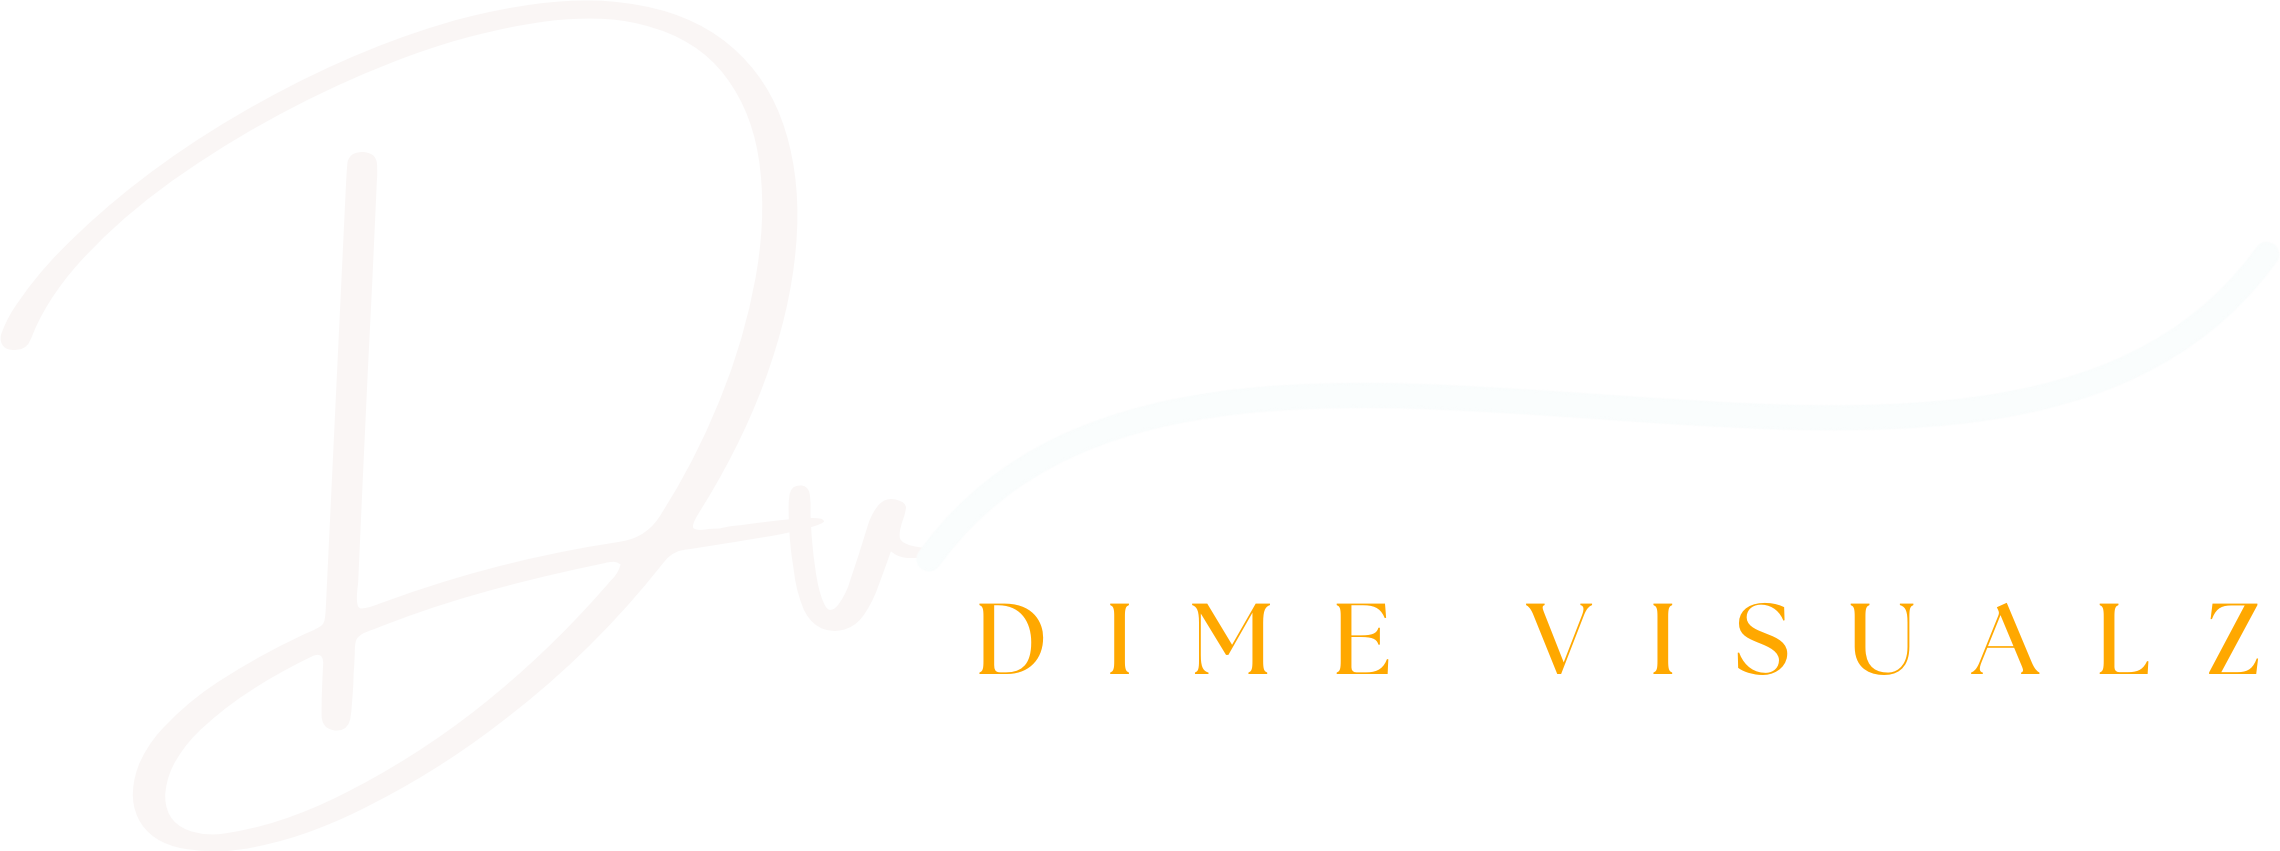 DimeVisualz - Everything visual